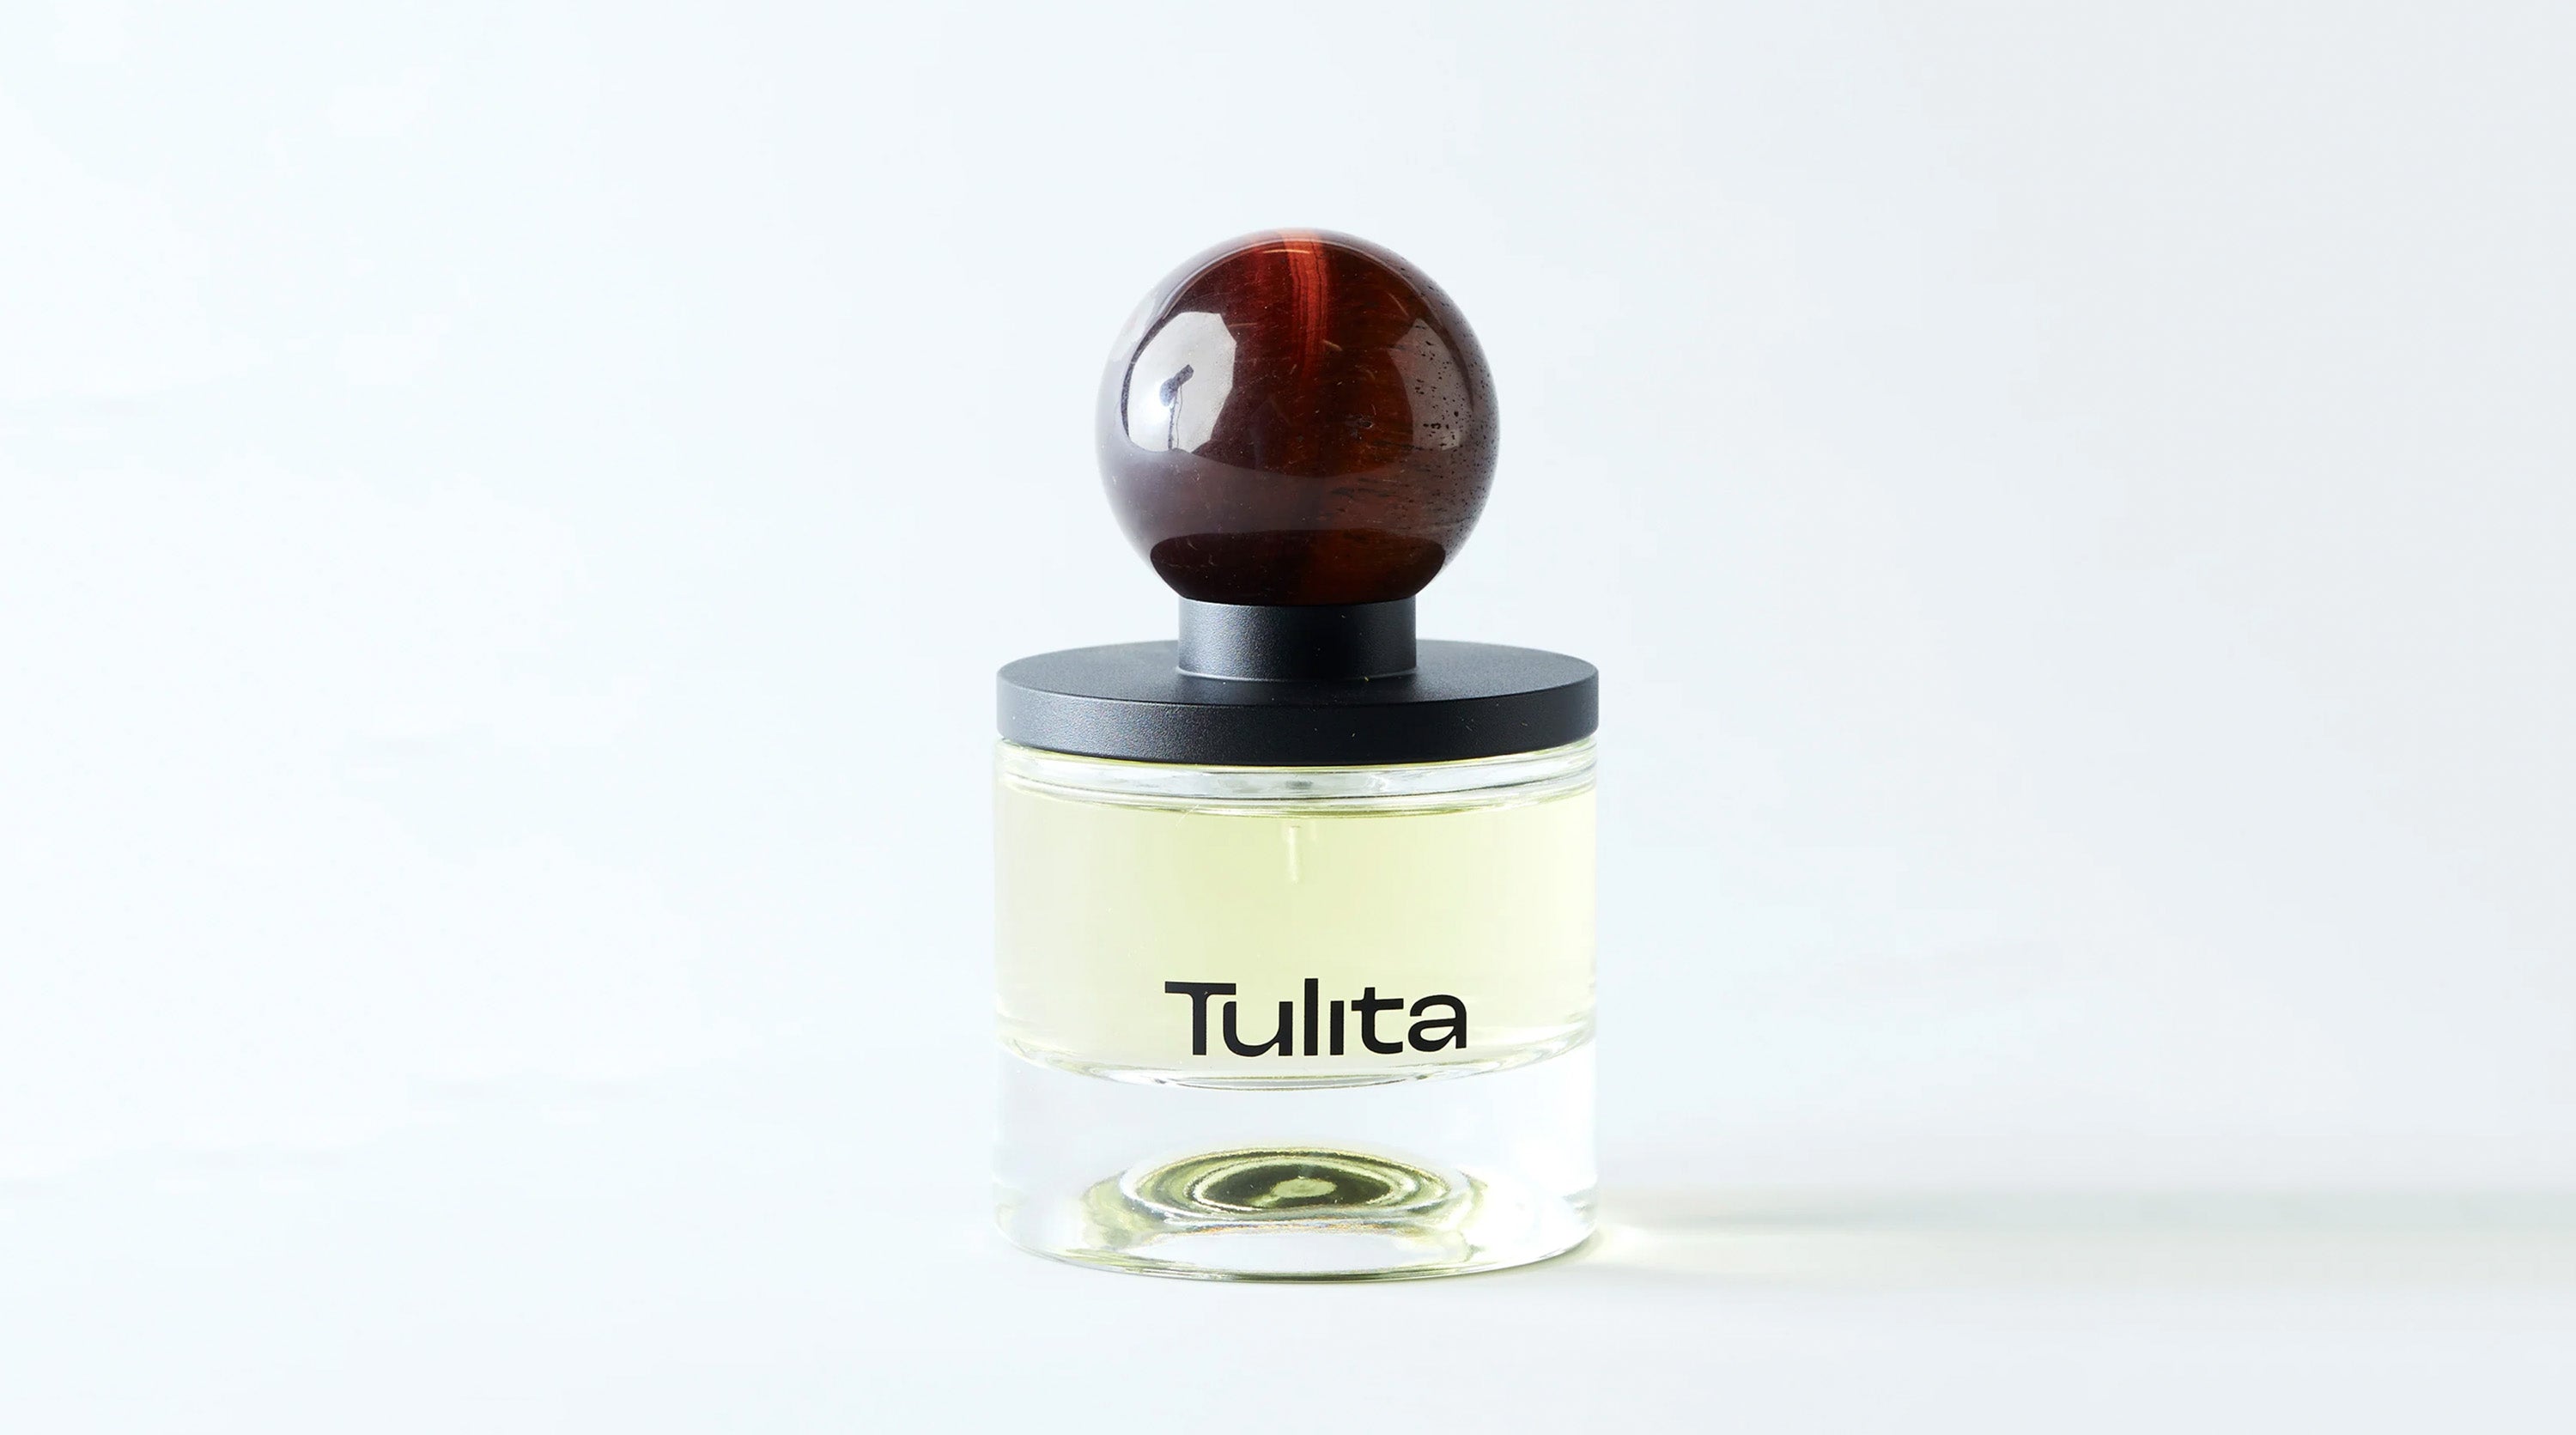 Agati by Tulita 100% Natural Perfume at Sensoriam